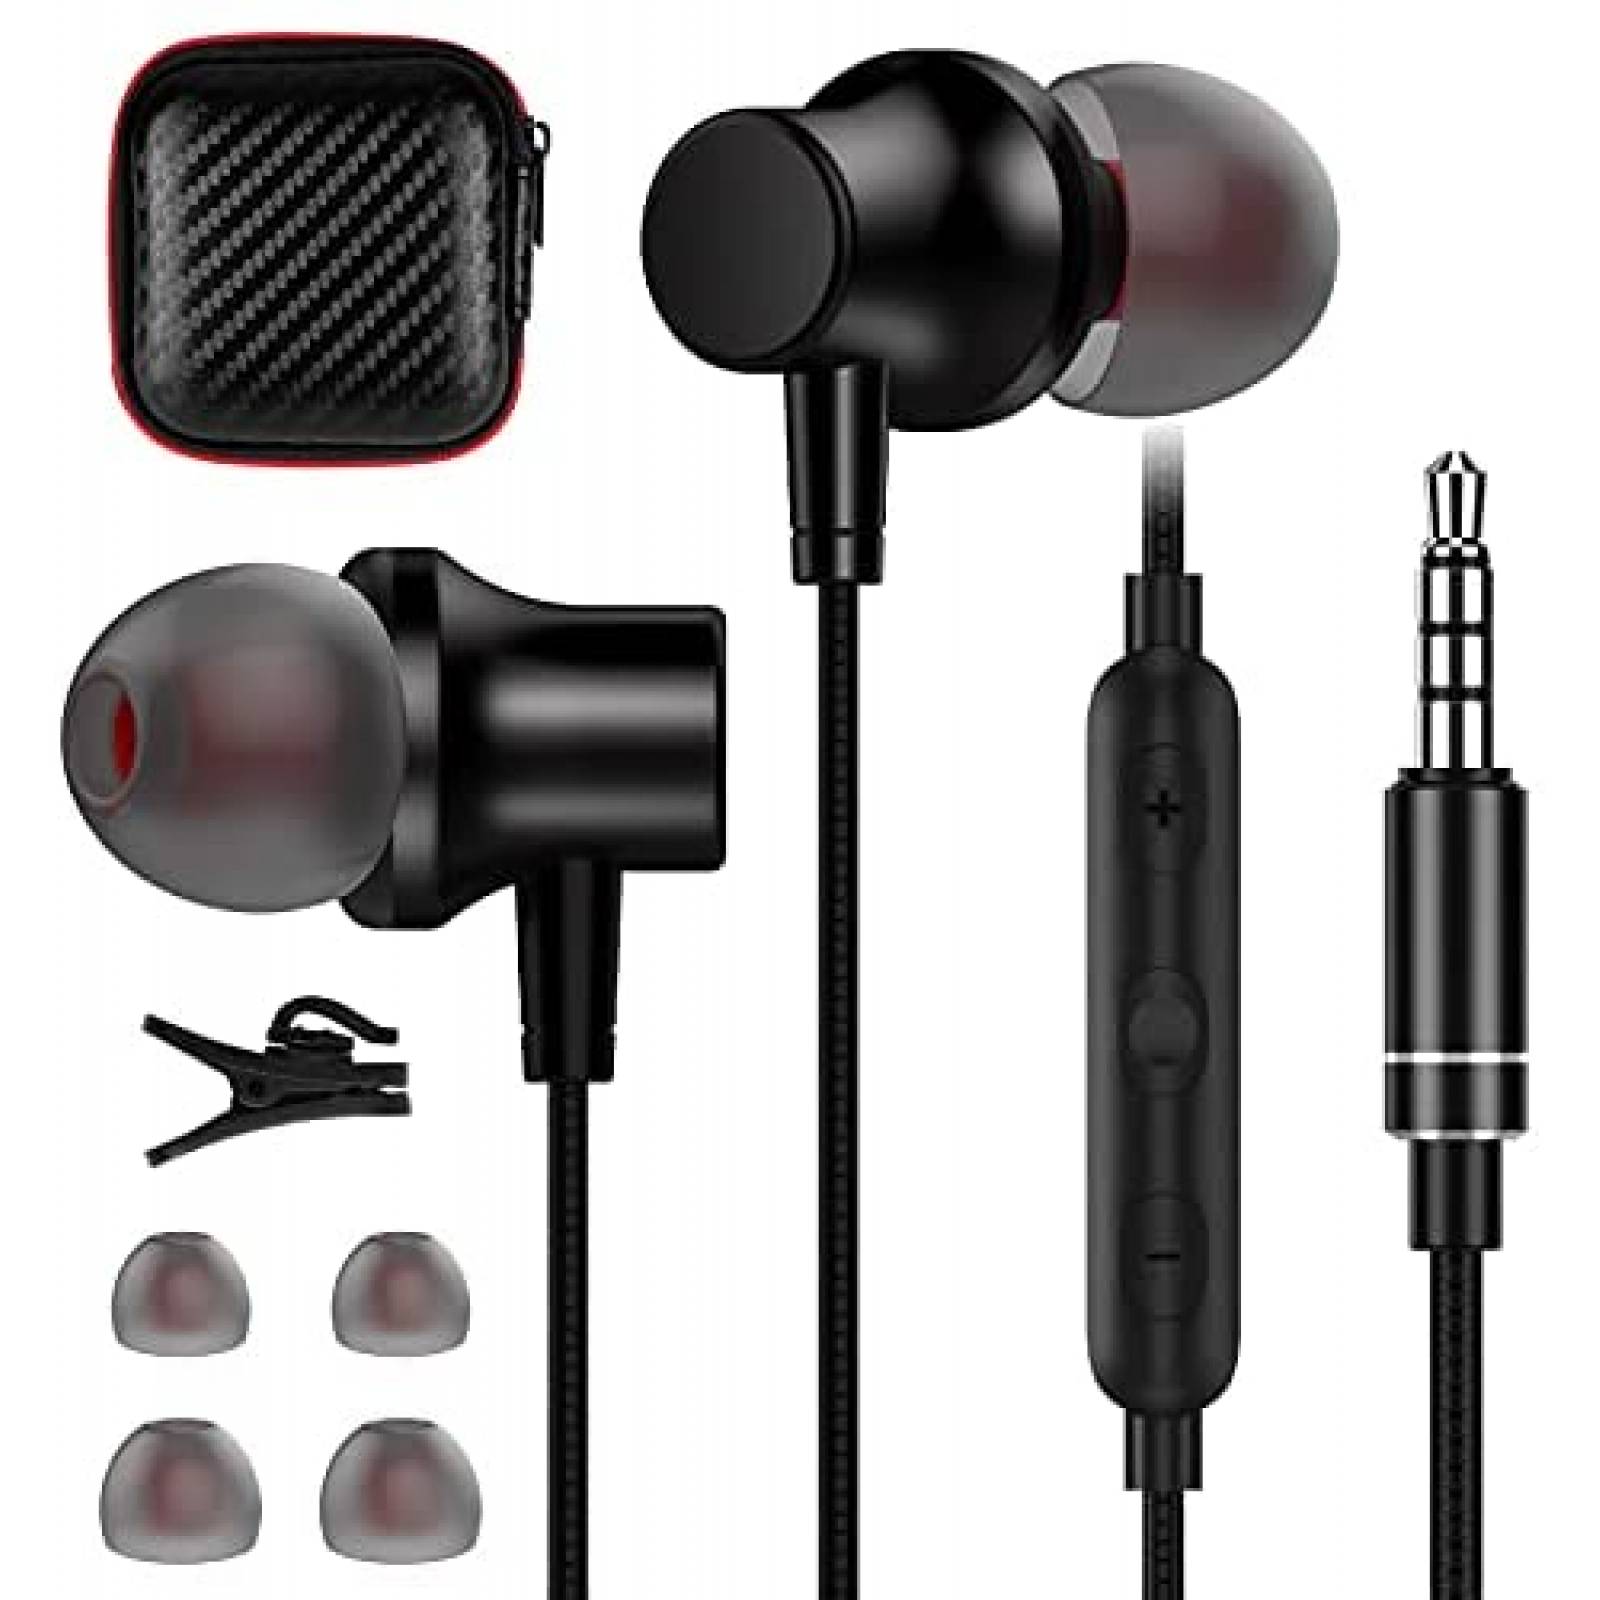 Auriculares Universales Con Cable, Micrófono, Botones Multifunción